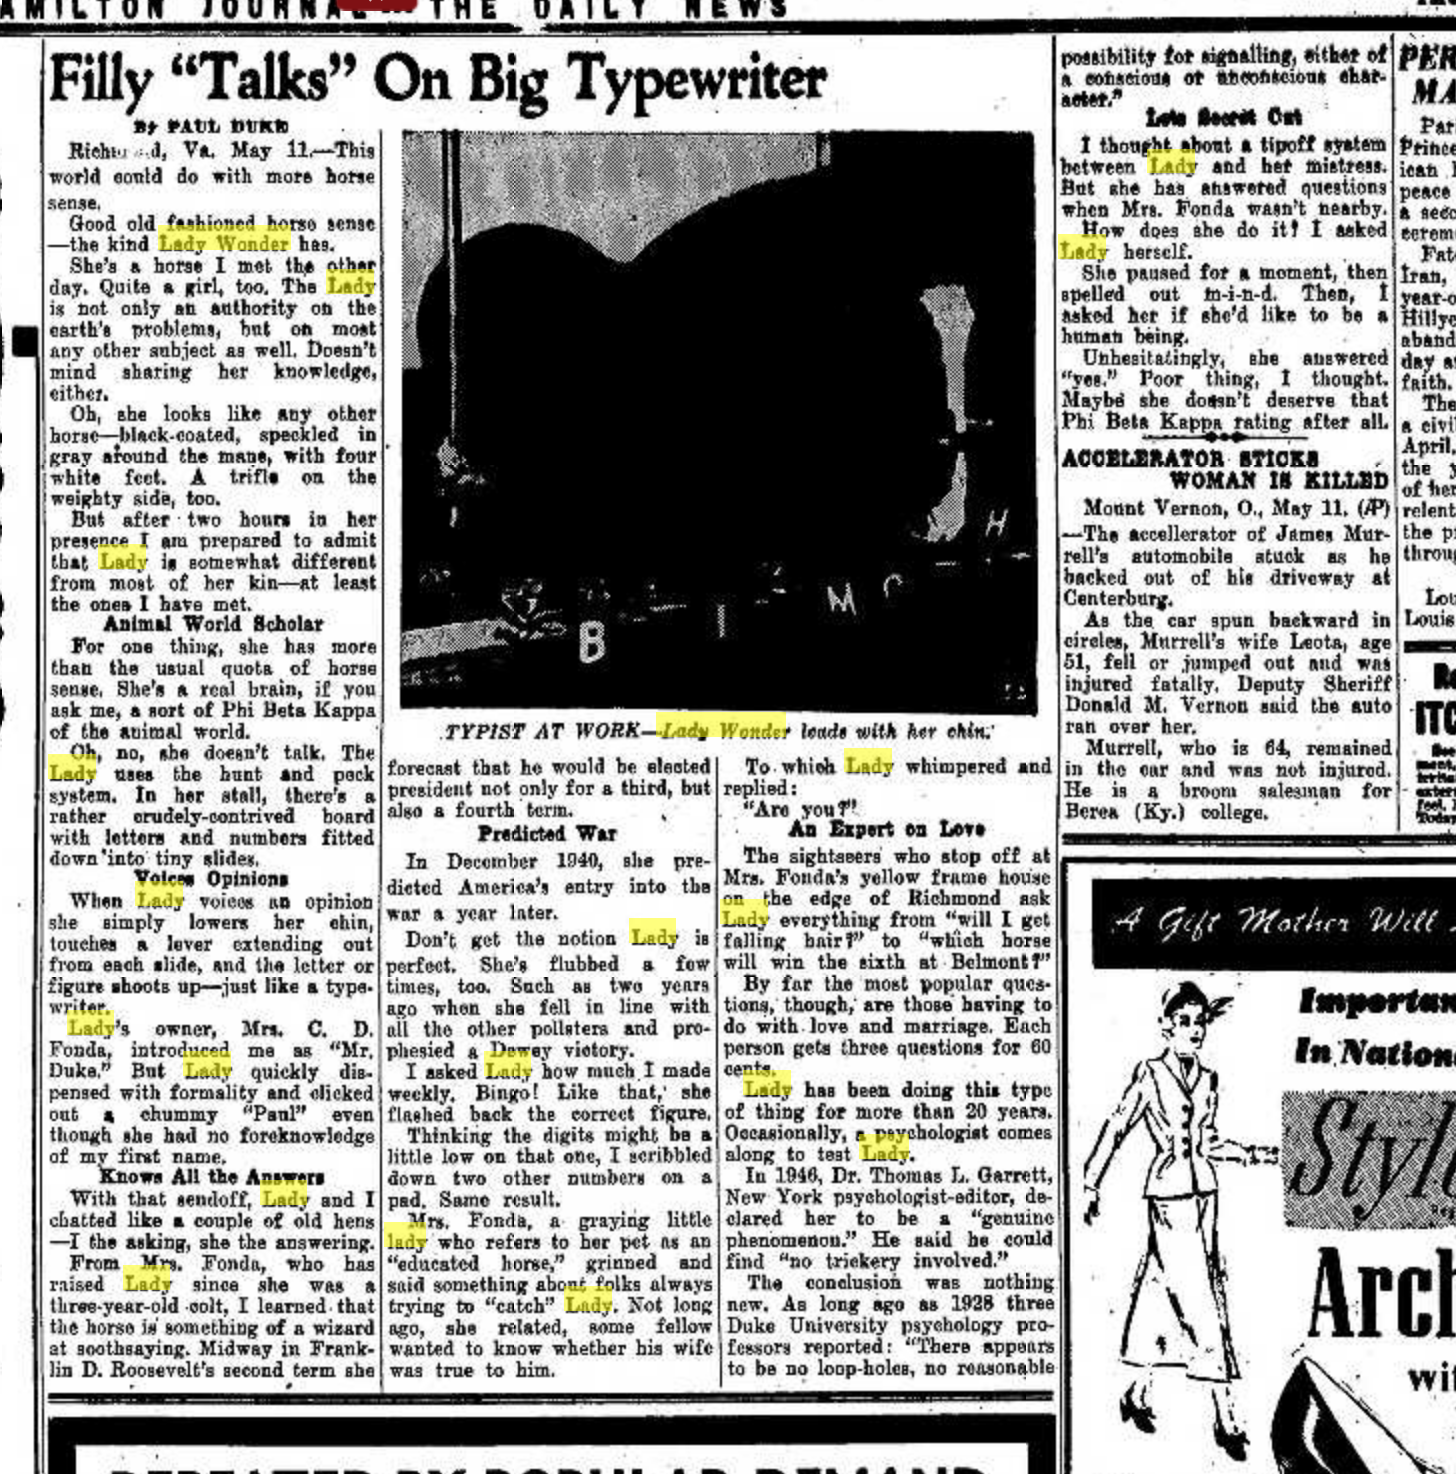 Hamilton Daily News Journal May 11 1950.png